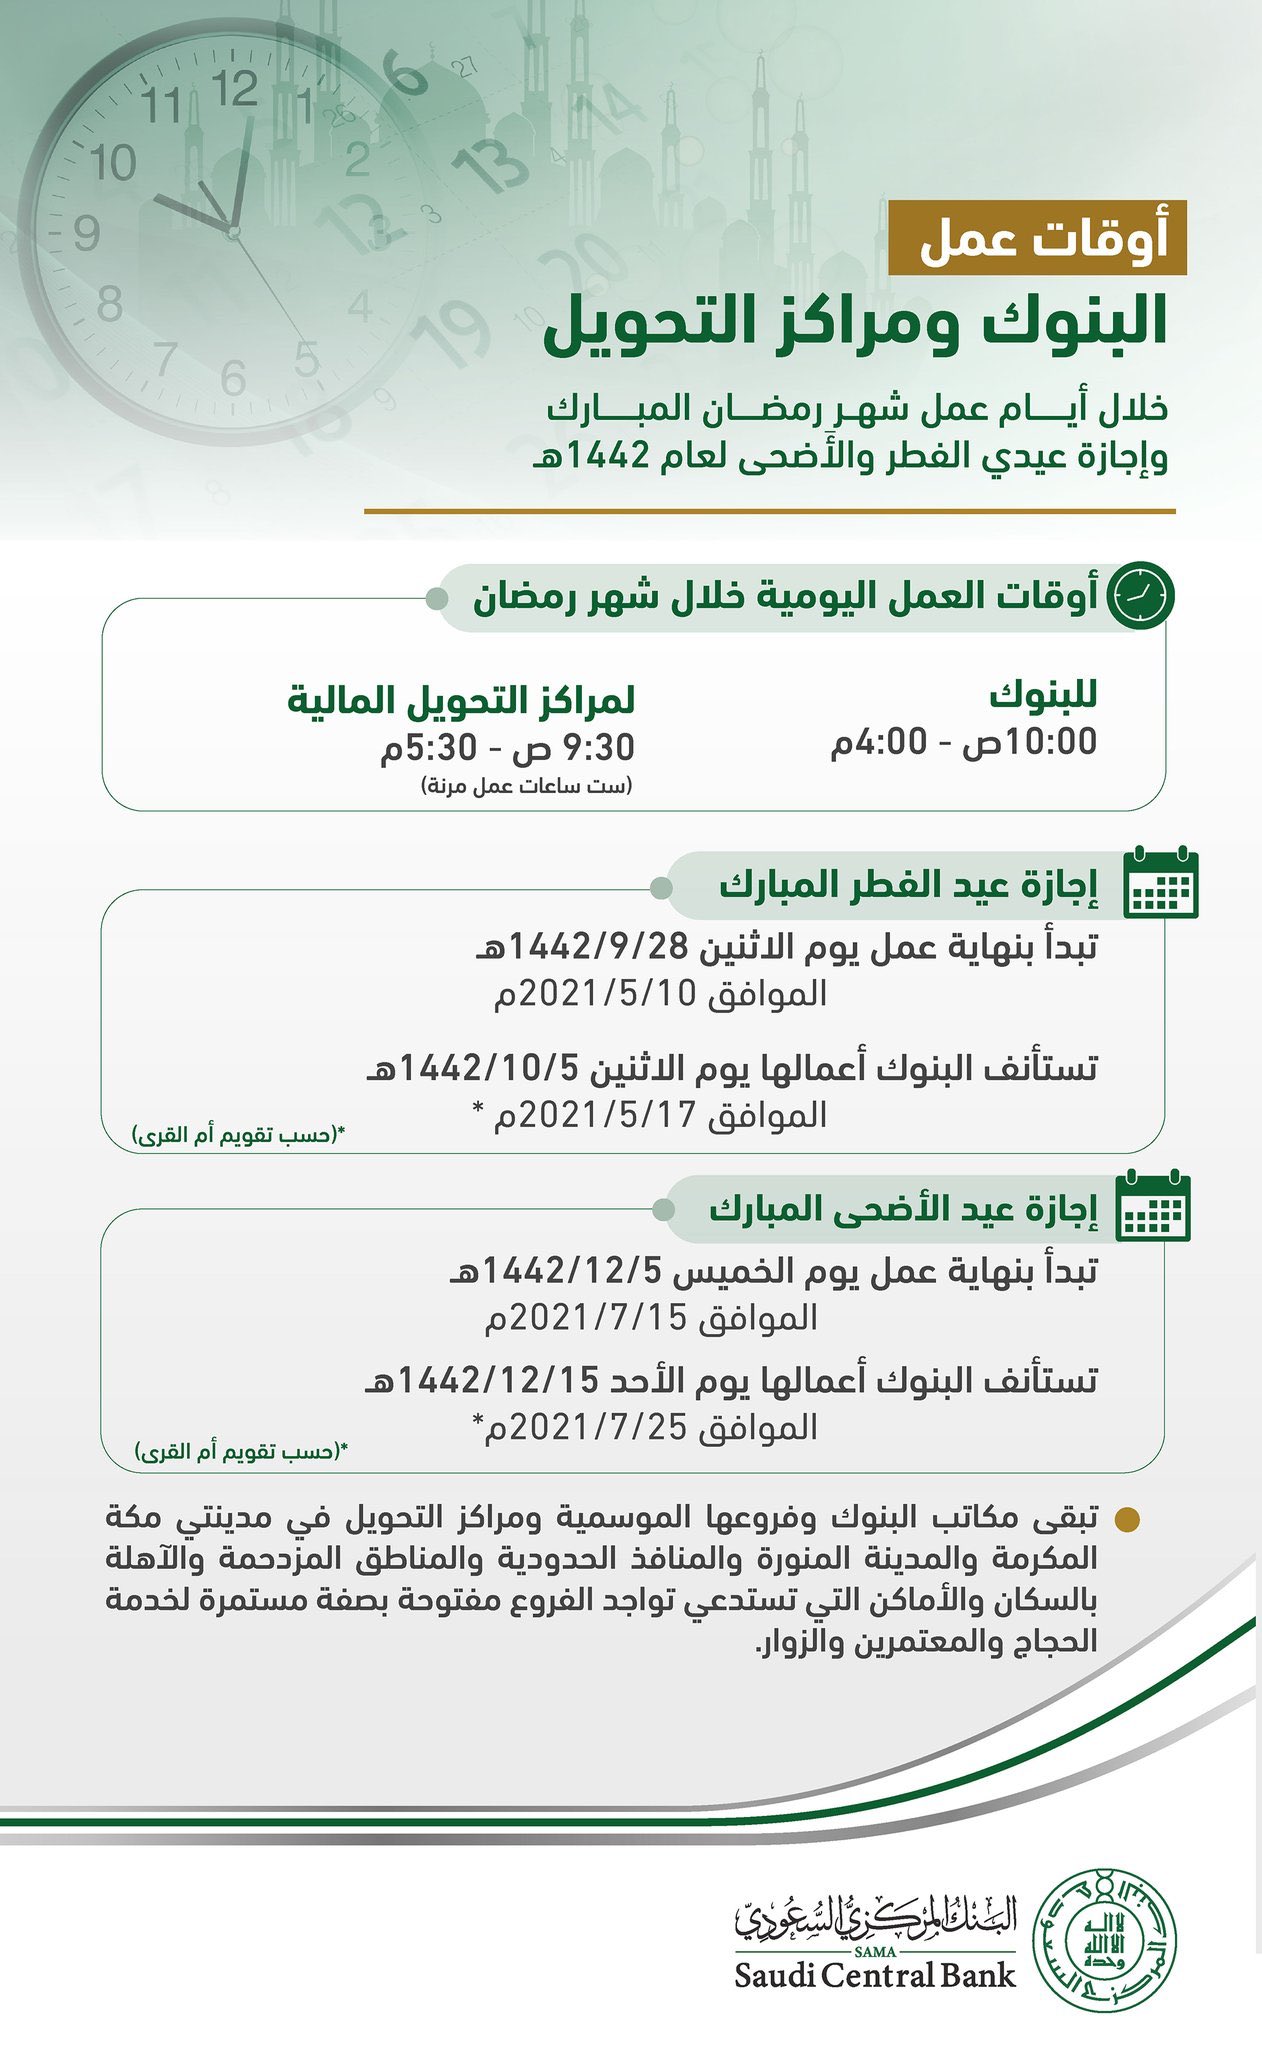 “البنك المركزي السعودي” يحدد أوقات عمل البنوك خلال شهر رمضان وإجازة عيدي الفطر والأضحى